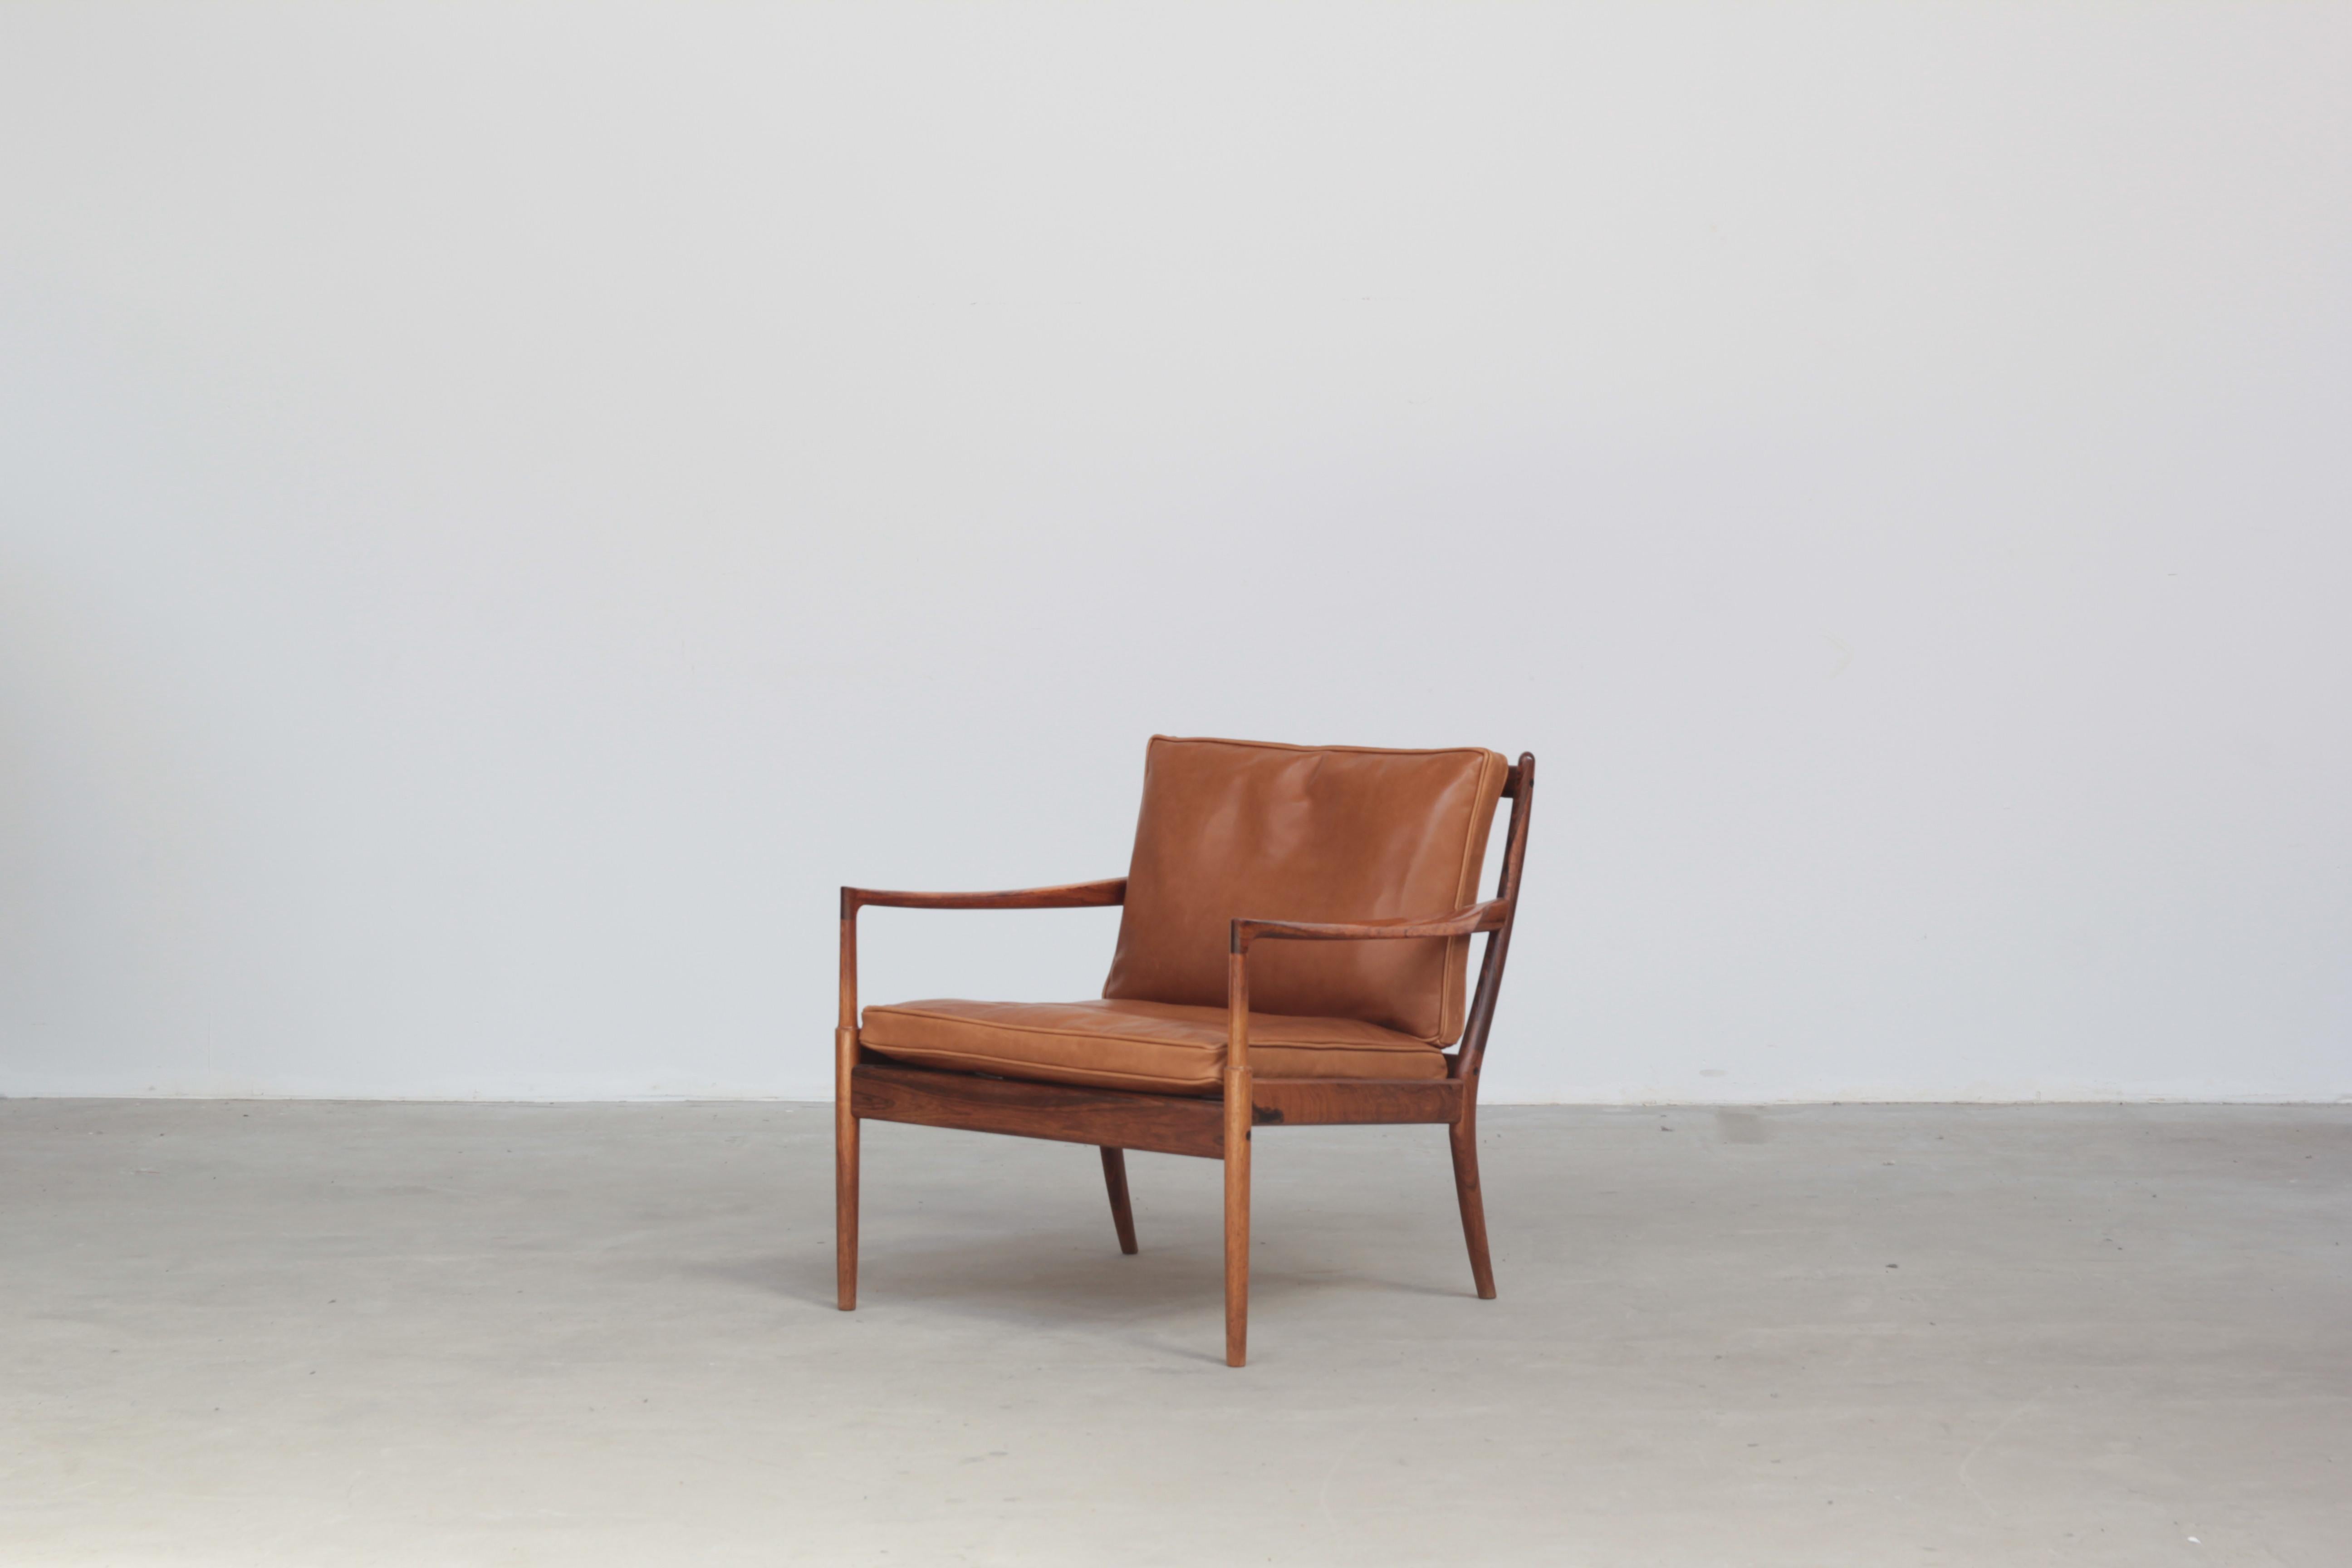 Der 1958 von Ib Kofod-Larsen für OPE Mobler entworfene Loungesessel ist ein beeindruckendes Beispiel für dänisches Design aus der Mitte des Jahrhunderts. Der Stuhl ist aus exquisitem Palisanderholz gefertigt, das ihm eine warme und luxuriöse